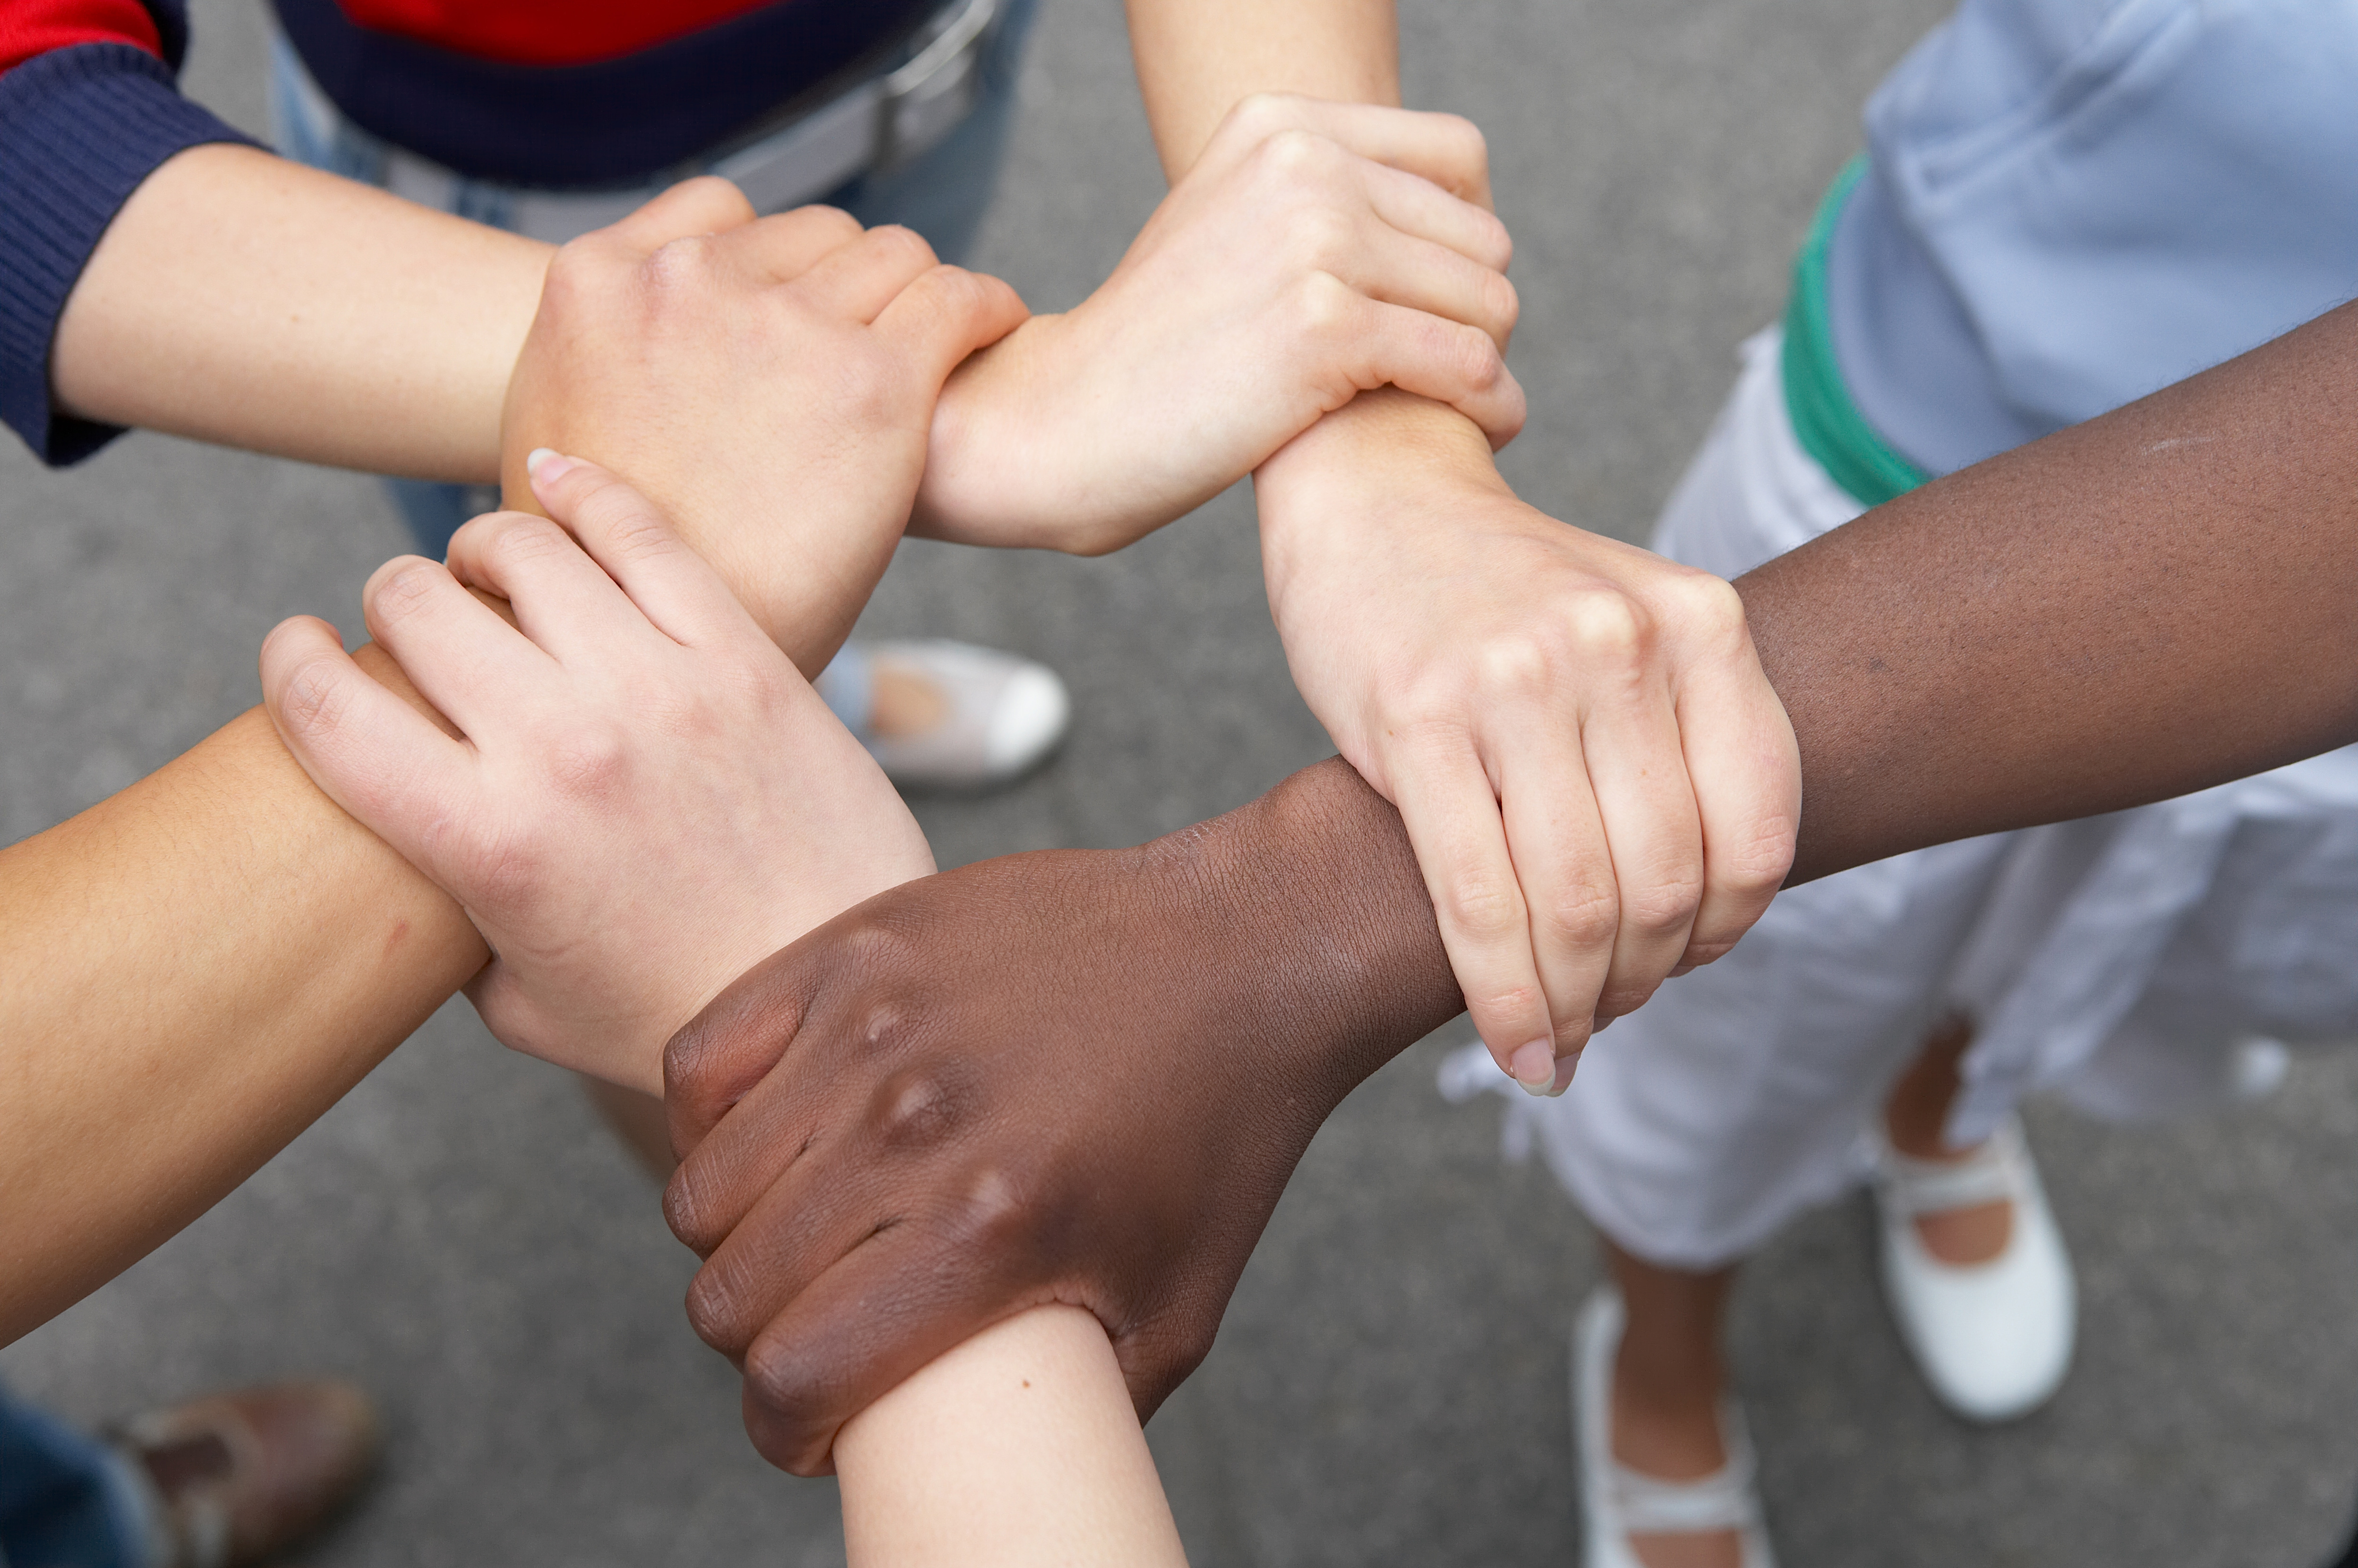 Personen  verschiedener Hautfarben stehen auf Straße und greifen an Handgelenk, sodass ein Kreis entsteht (Ansicht von oben)reis